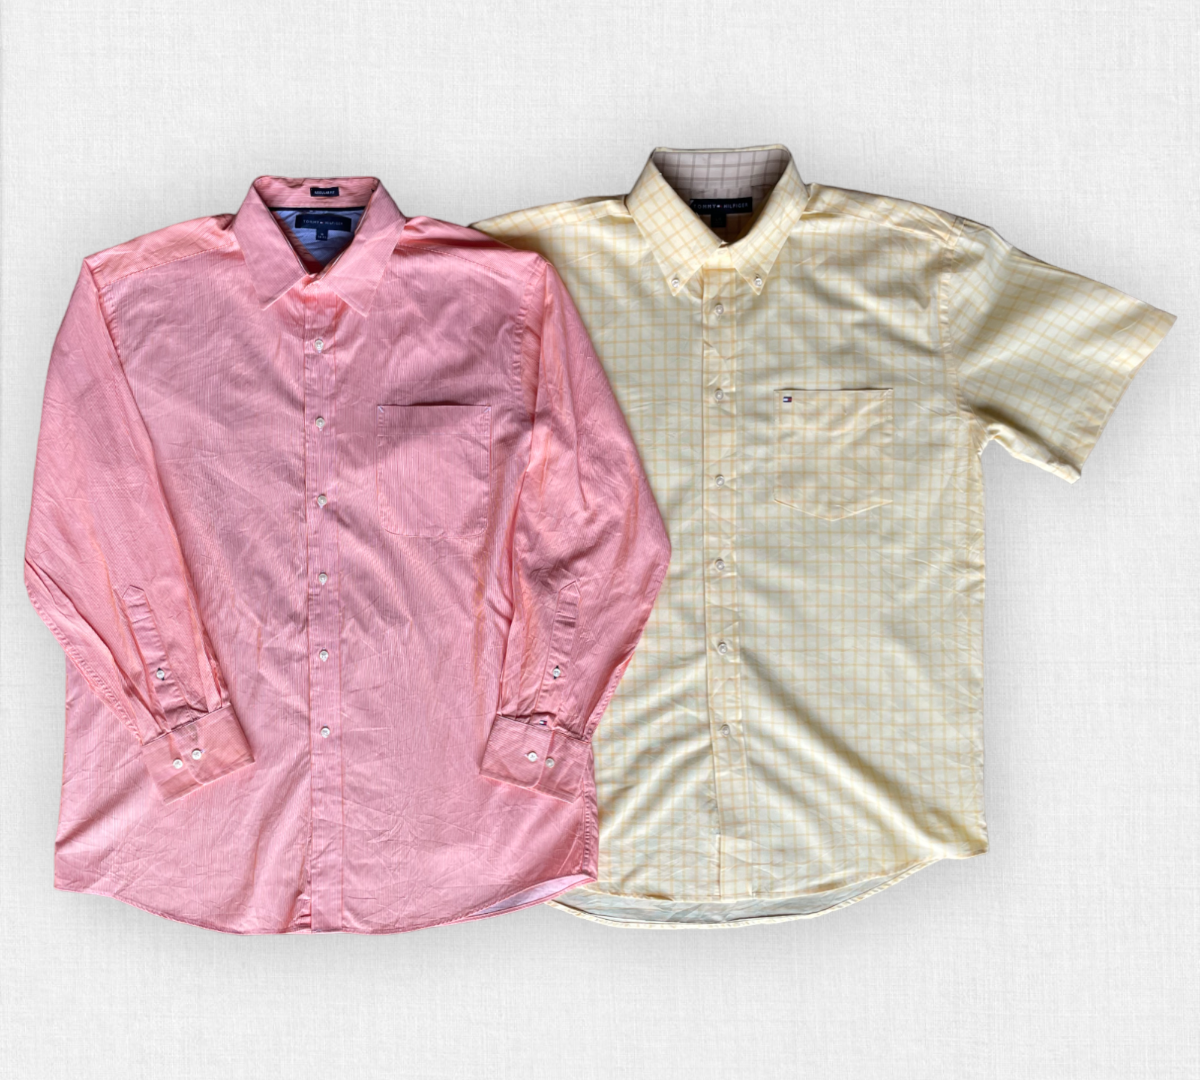 Vintage Tommy Hilfiger blouse.